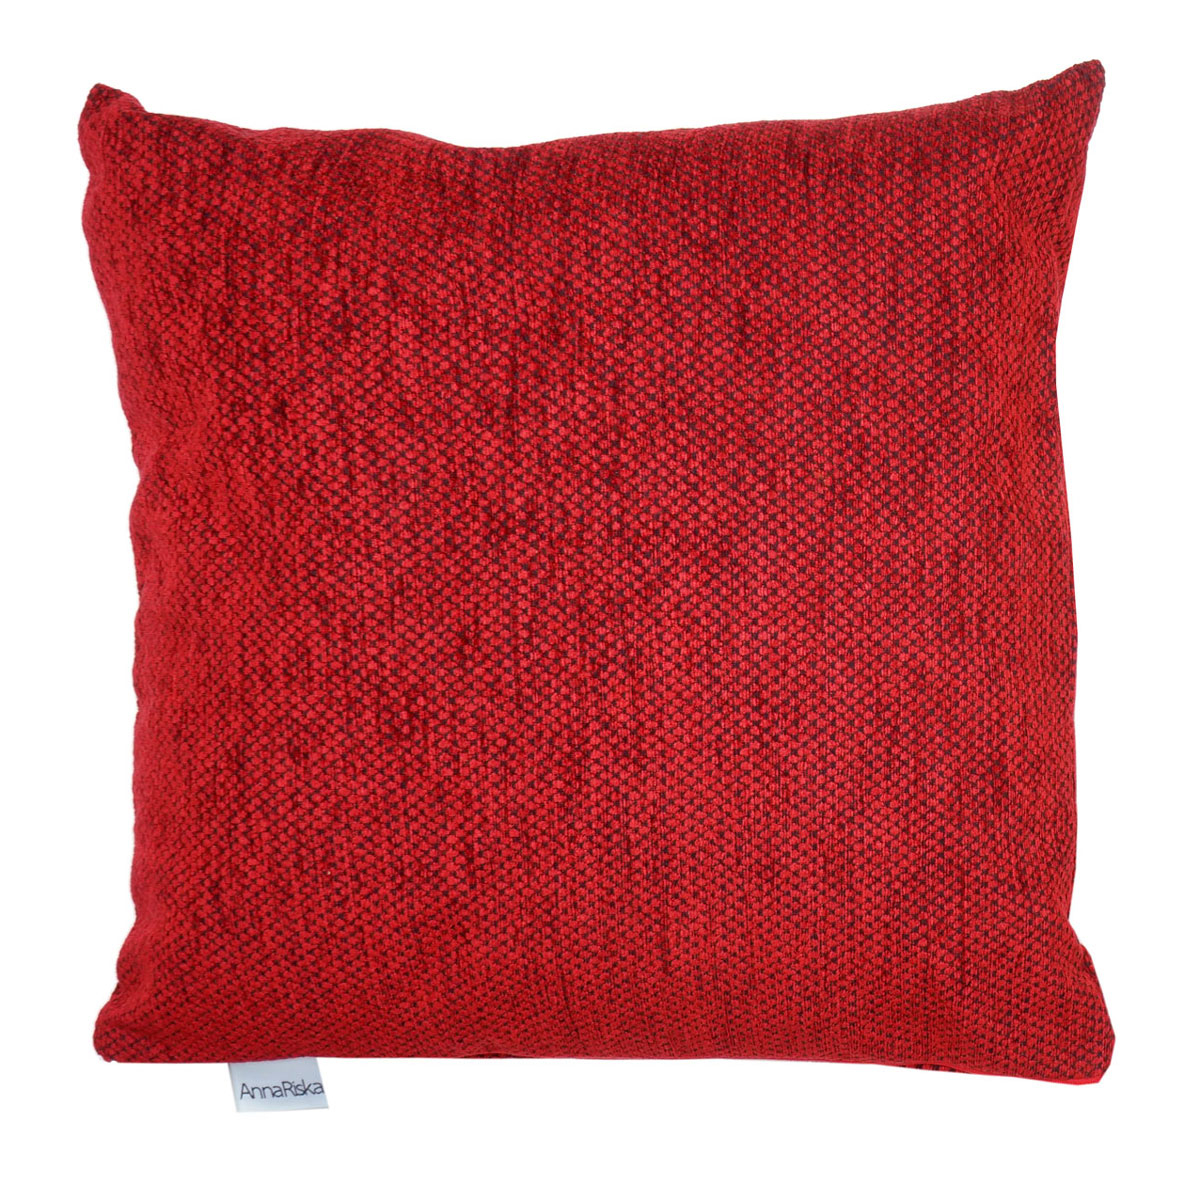 Διακοσμητικό Μαξιλάρι (55×55) Anna Riska 1440 Red